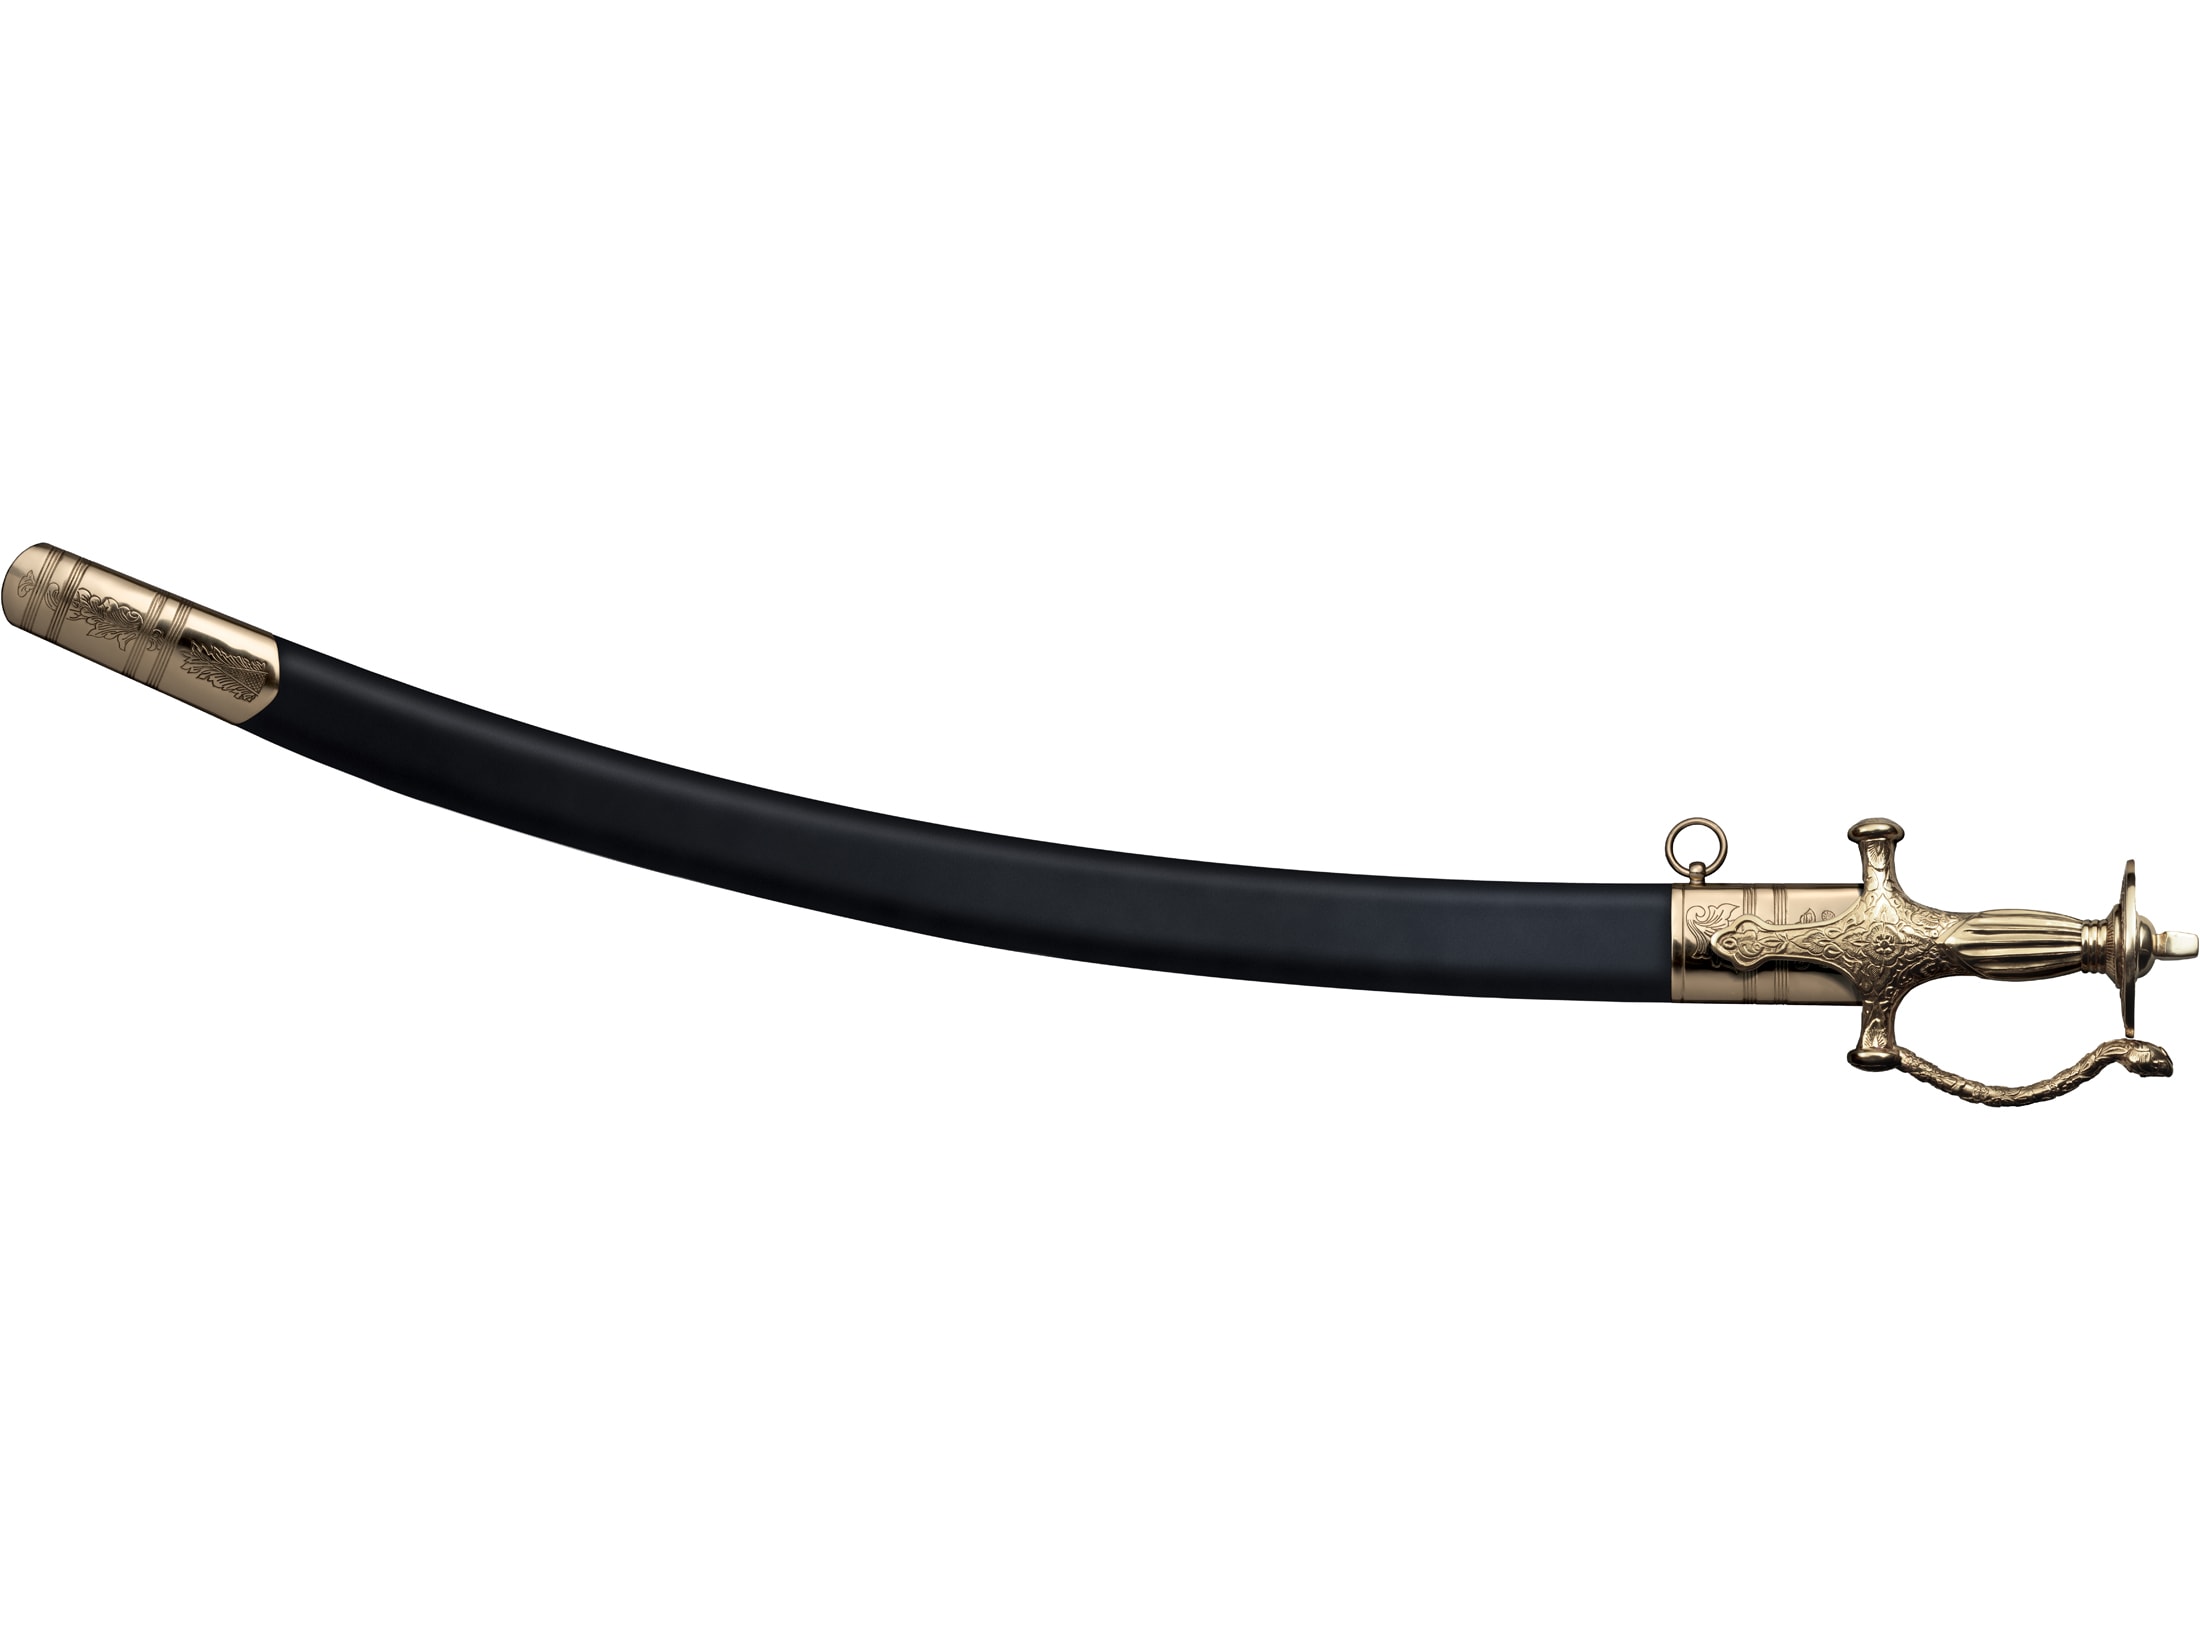 Cold Steel Talwar Sword 28.75″ Saber 1090 High Carbon Polished Blade Griv-Ex Handle Black For Sale